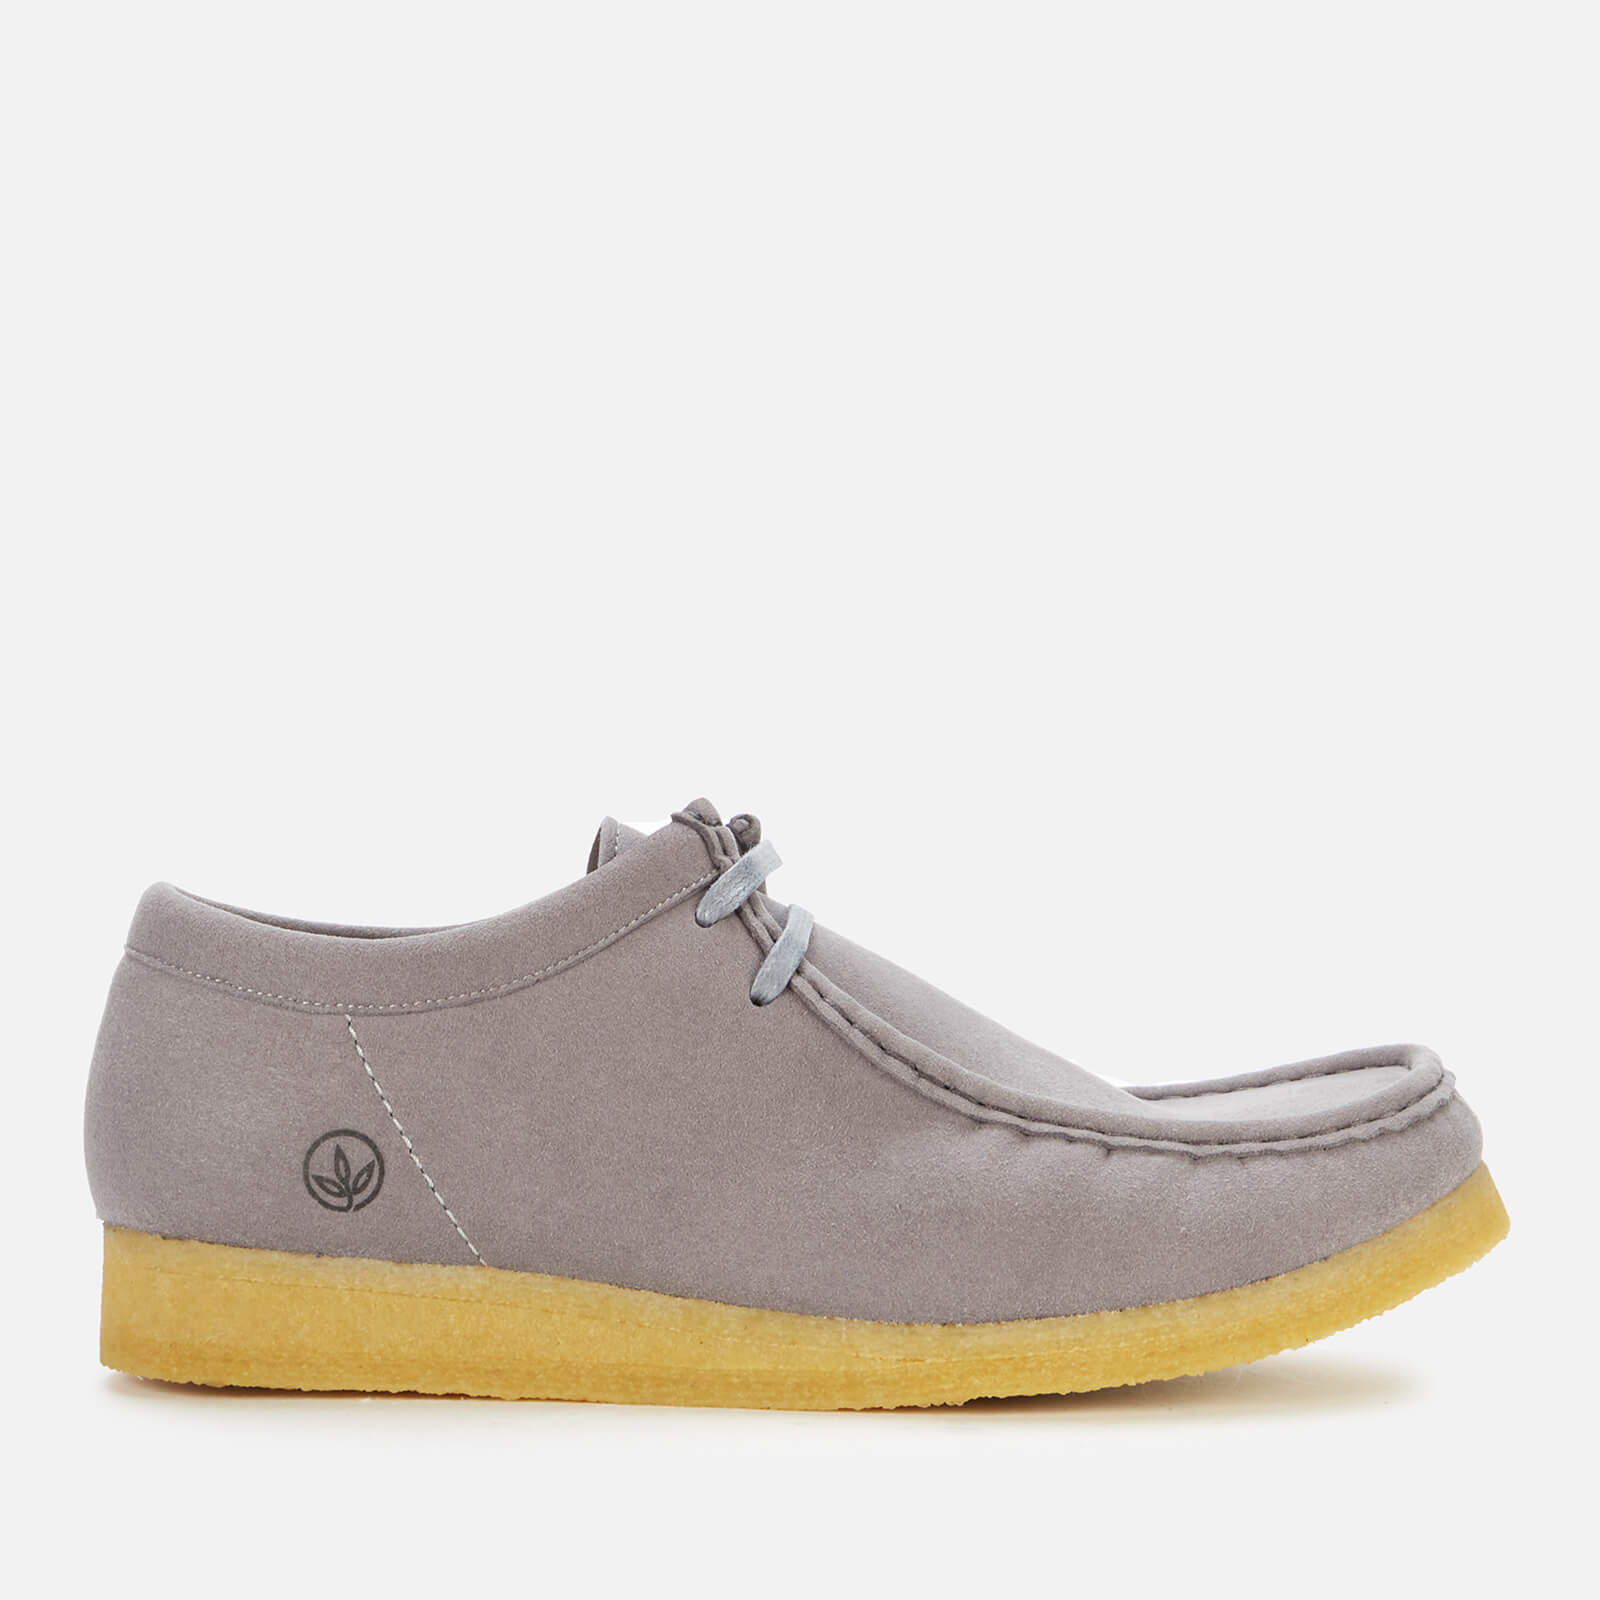 clarks originals men's wallabee vegan shoes - grey - uk 10